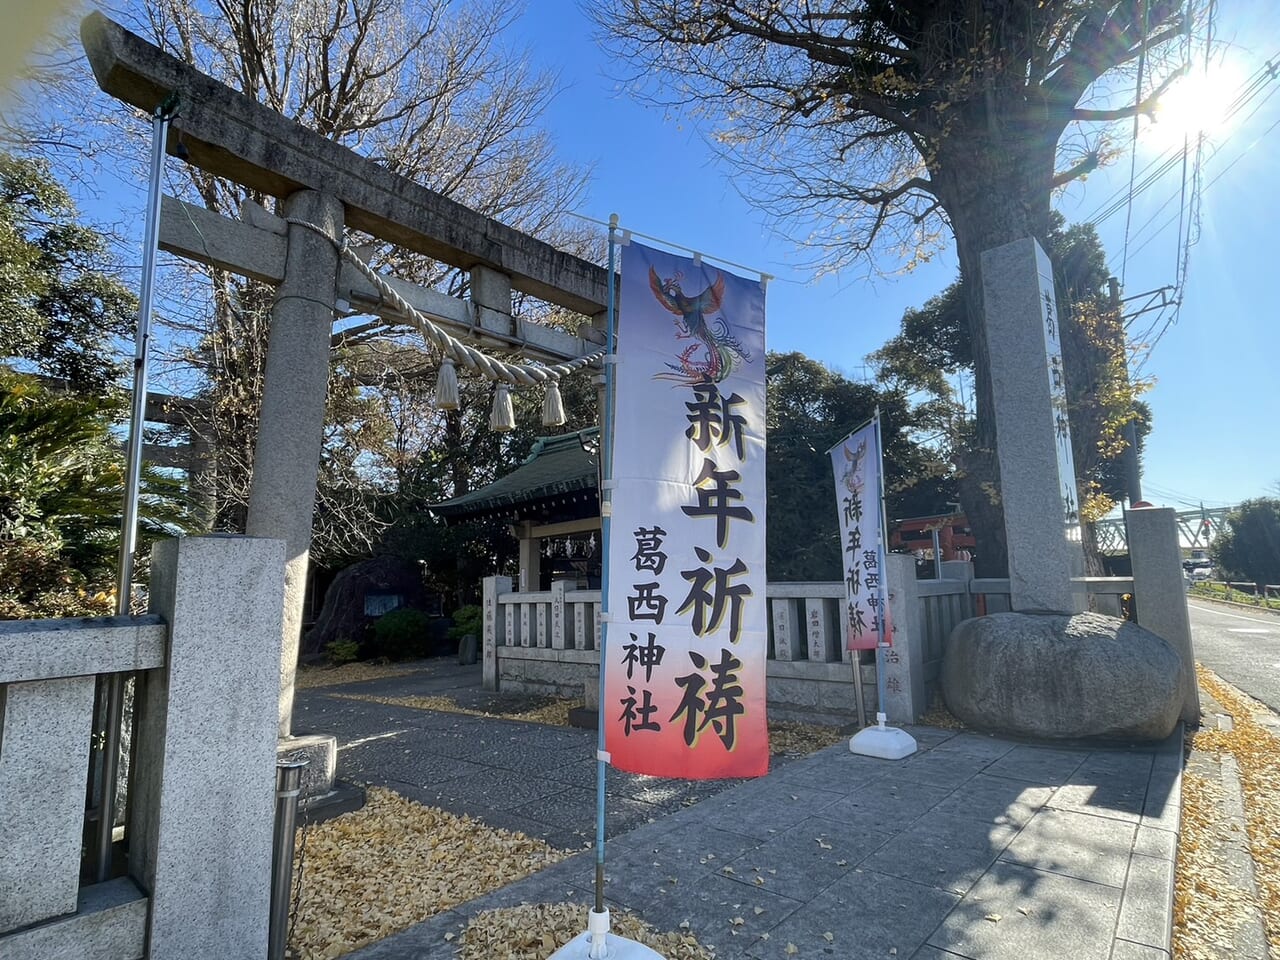 葛西神社入り口の新年祈祷のノボリ